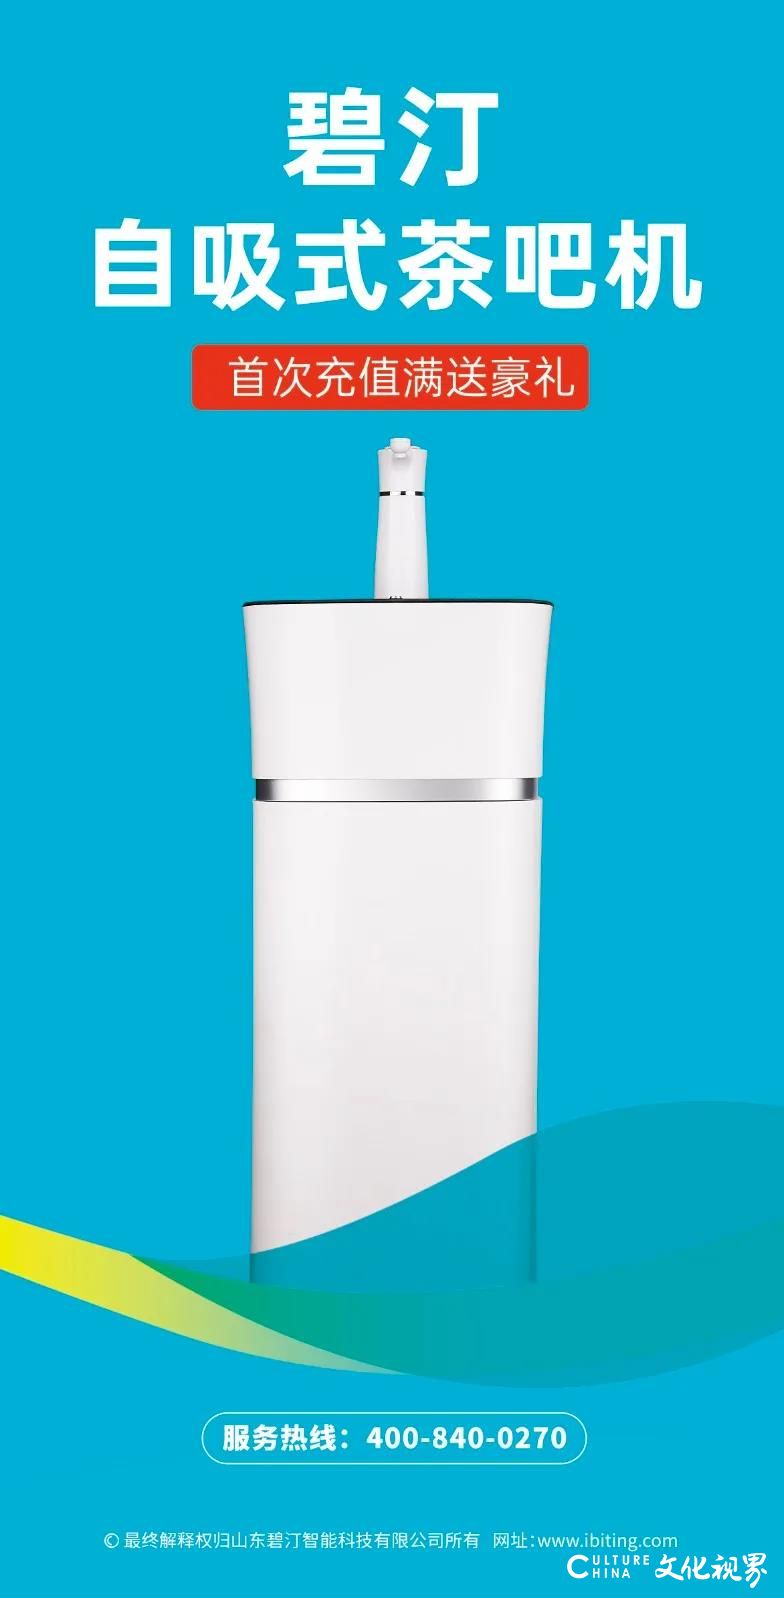 ​您家的饮水机多久没“洗澡”了？碧汀科技送来简单易学的“饮水机清洗小贴士”